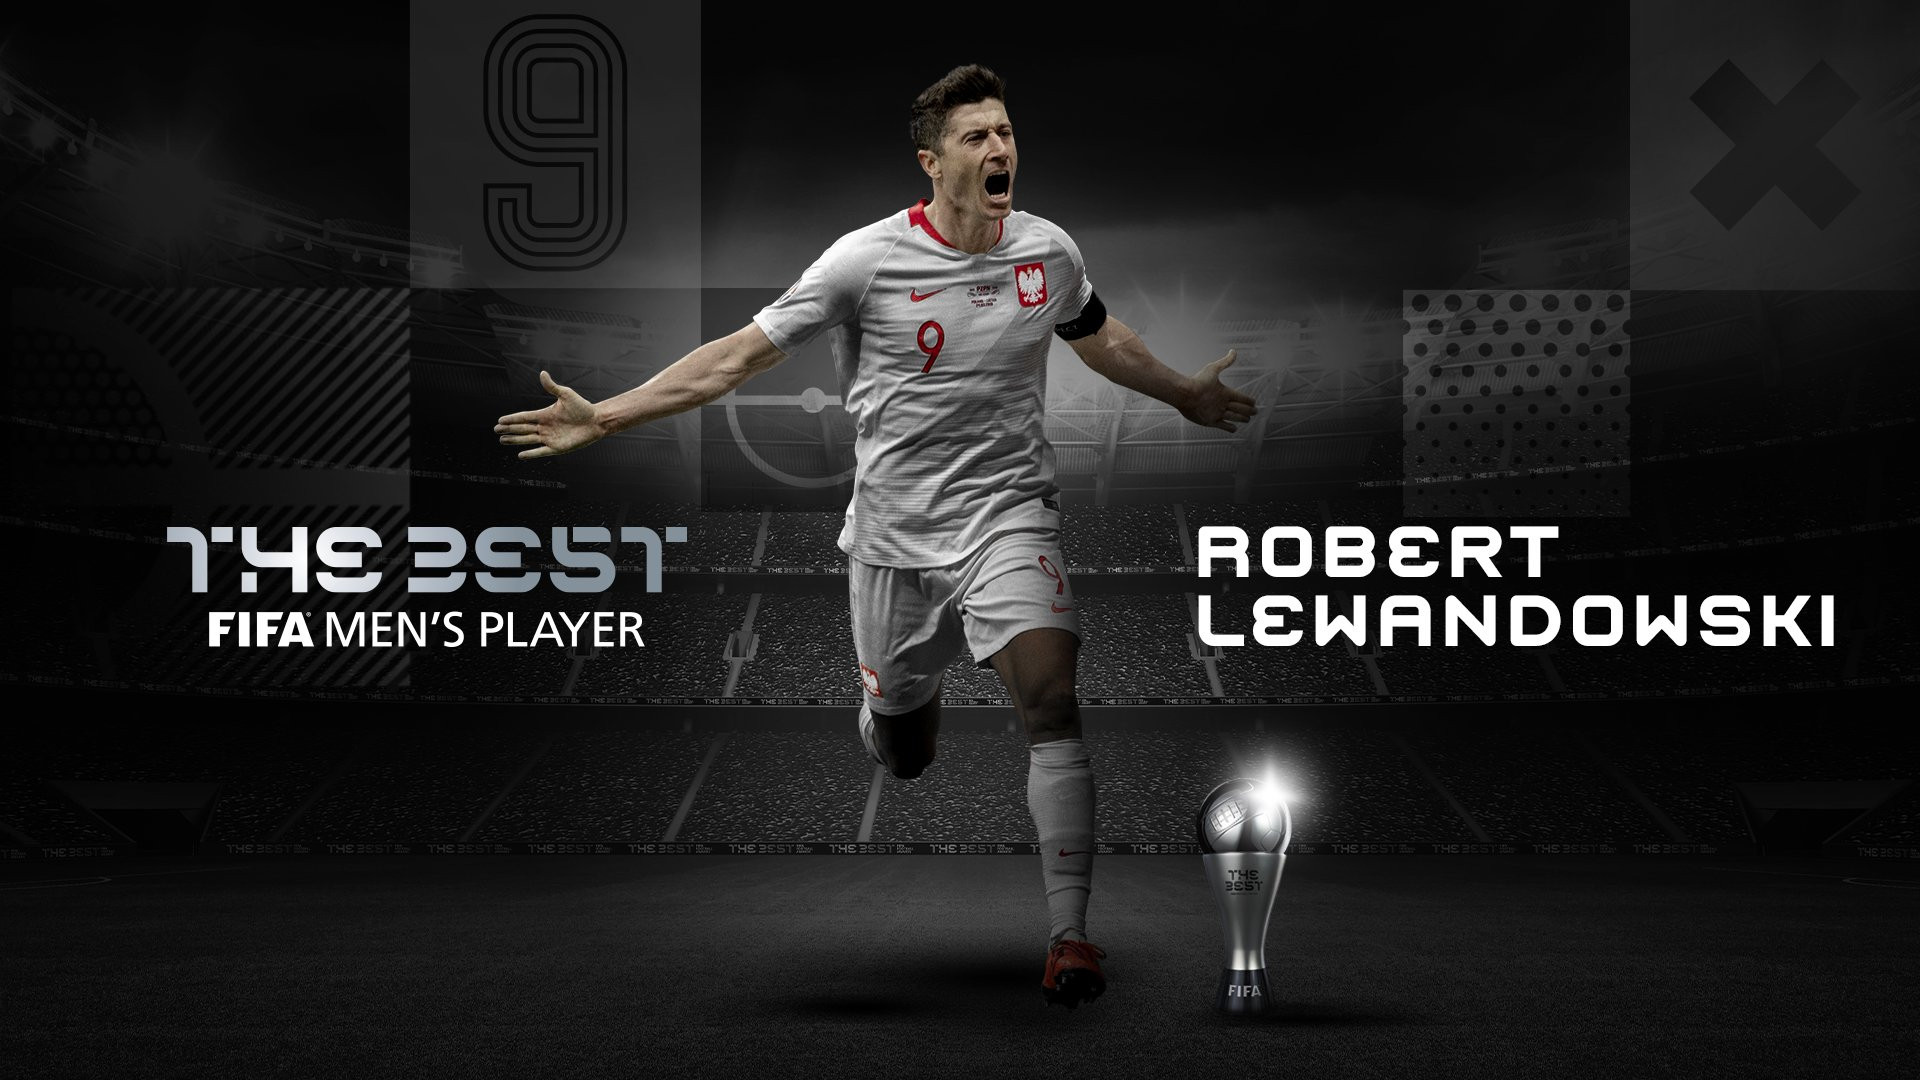 Lewandowski / The Best